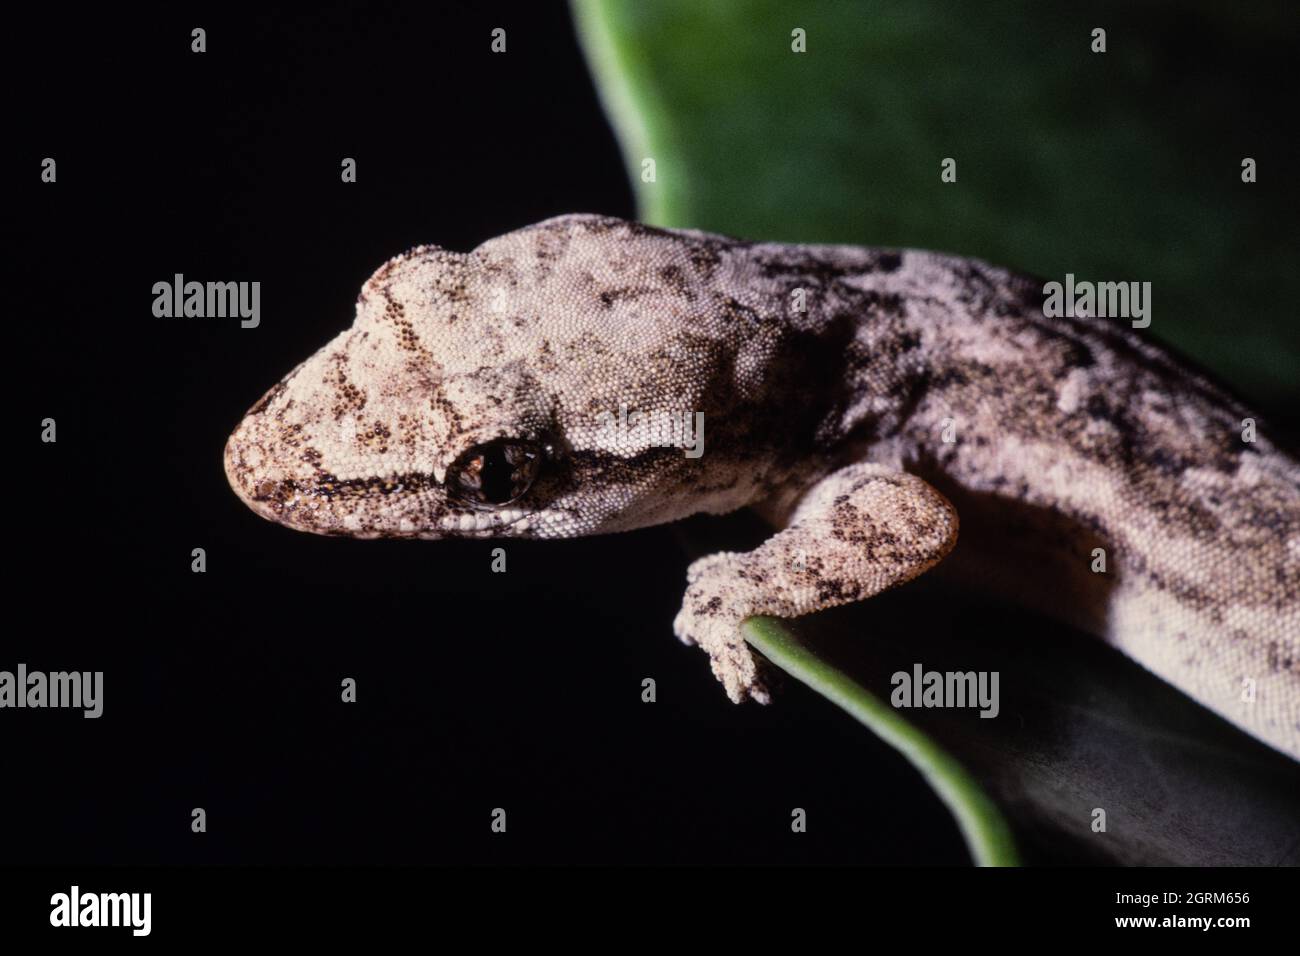 Le Mourning Gecko, Lepidodactylus lugubris, sur Guam. Notez la pupille elliptique presque complètement dilatée. Banque D'Images